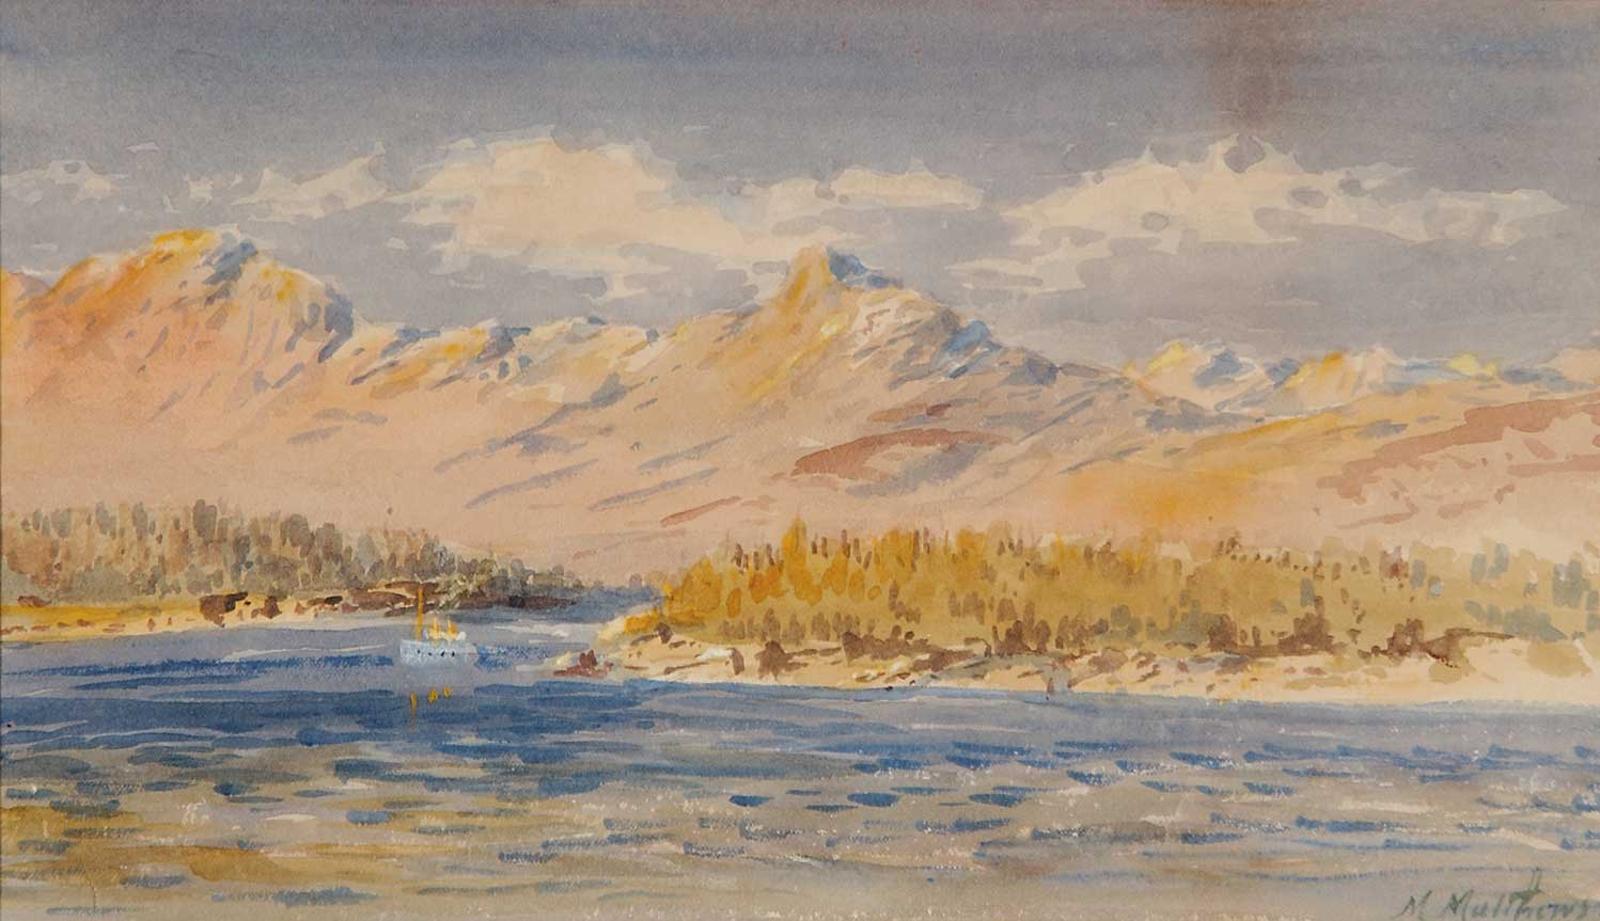 Marmaduke Matthews (1837-1913) - Sunset on the Pacific Coast